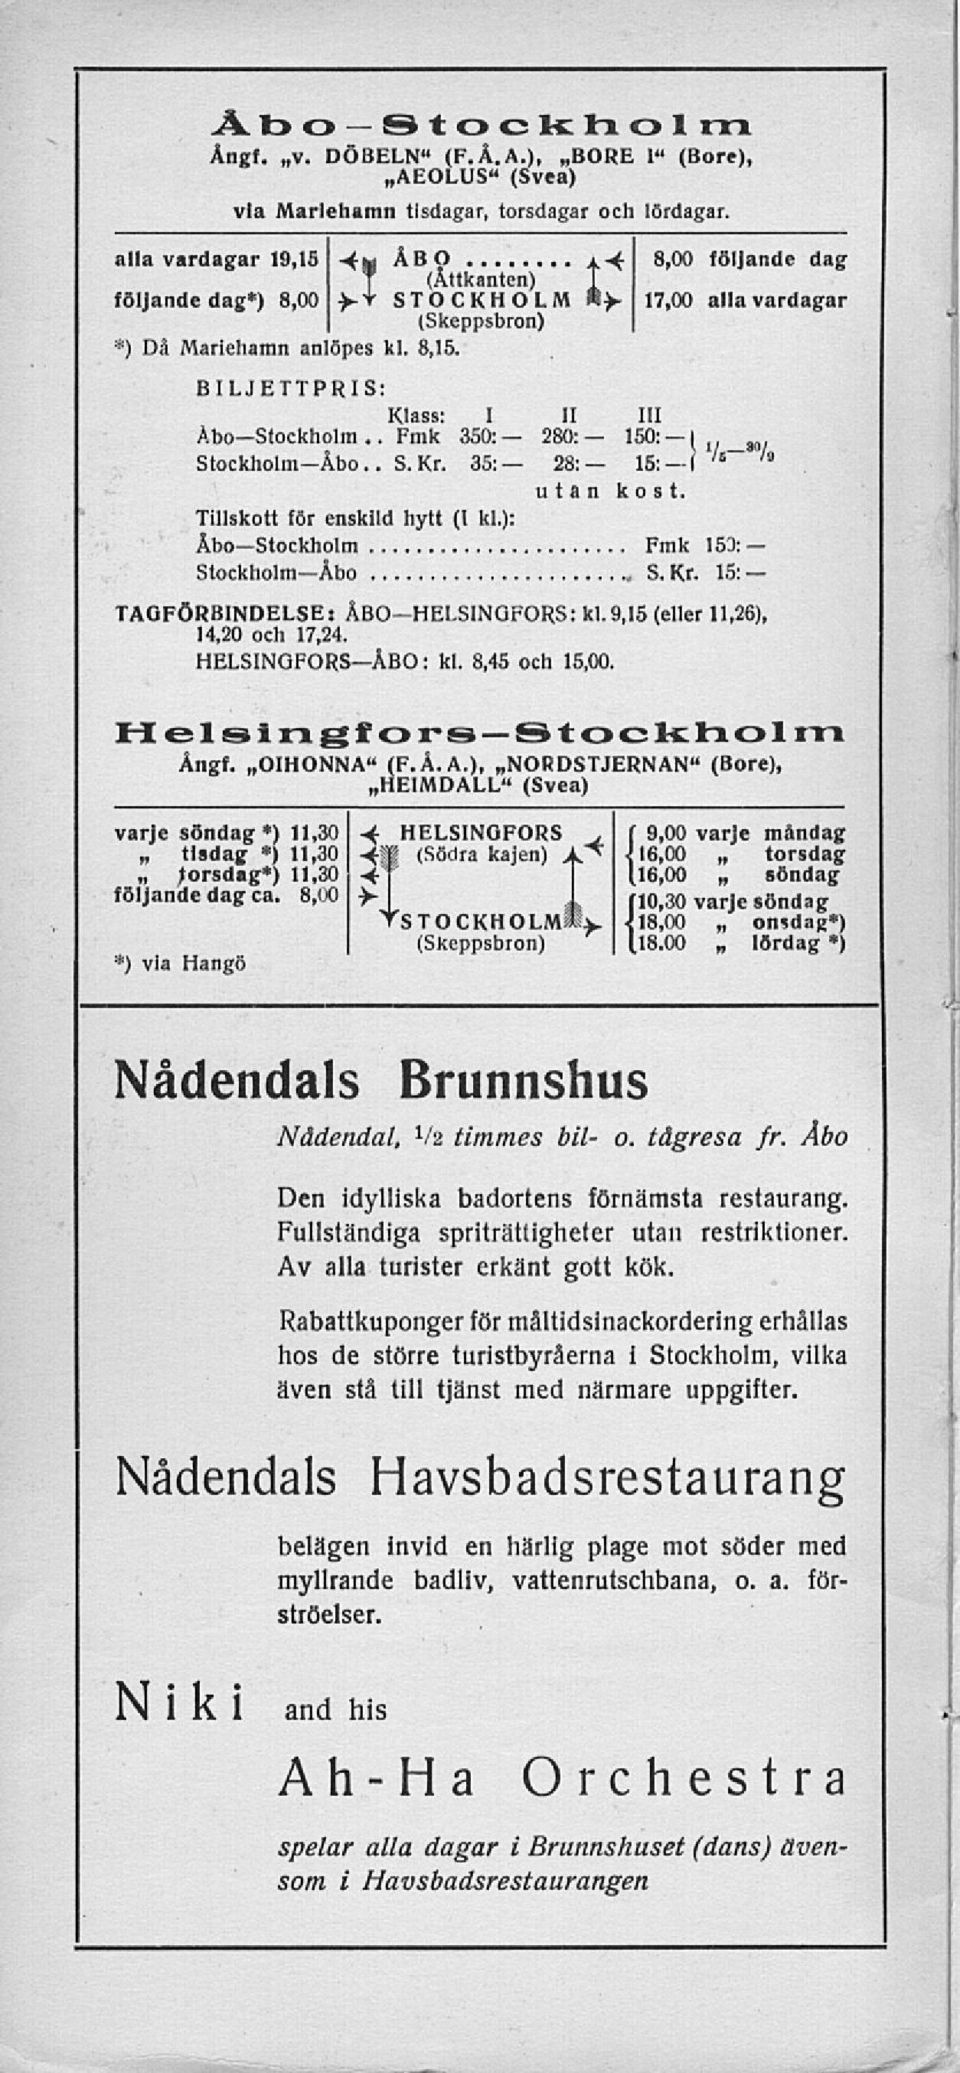 BILJETTPRIS: Klass: Abo Stockholm.. Fmk I 350: II 280: 111 150: I Stockholm-Åbo.. S.Kr. 35: 28: 15: I '» '" utan kost. Tillskott för enskild hytt (I kl.): Åbo Stockholm Fmk 153: Stockholm Åbo Kr.